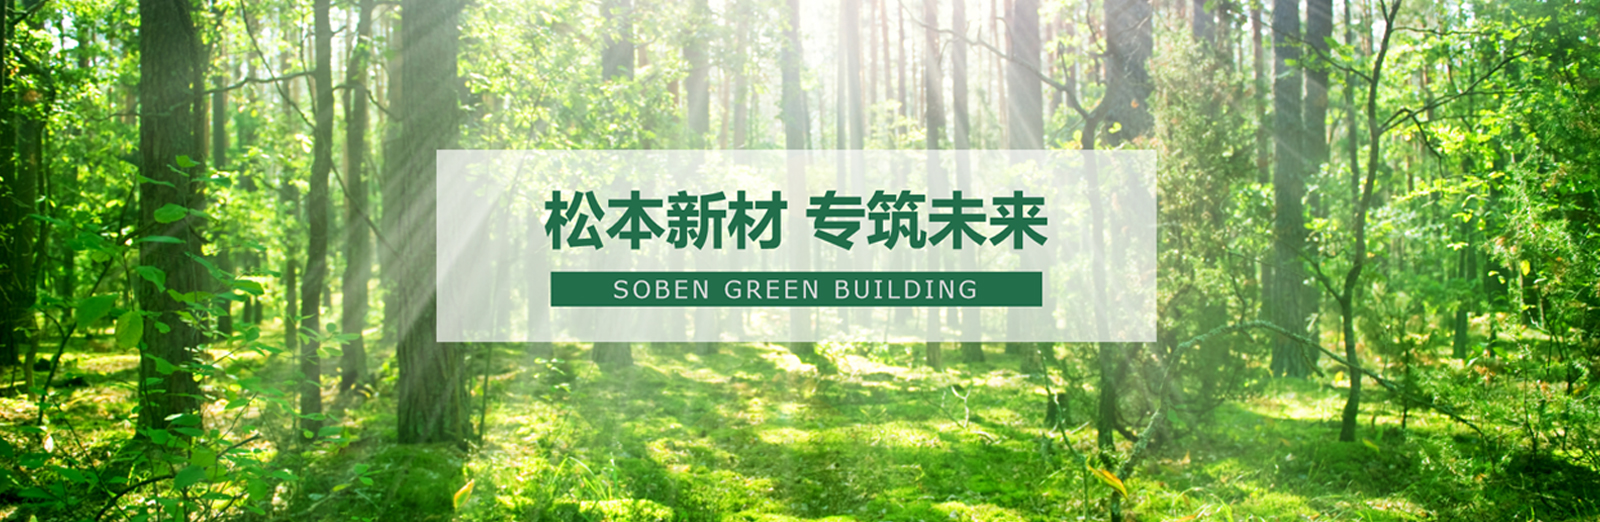 松本绿色-新型墙体推动中国绿色建筑墙体产业升级